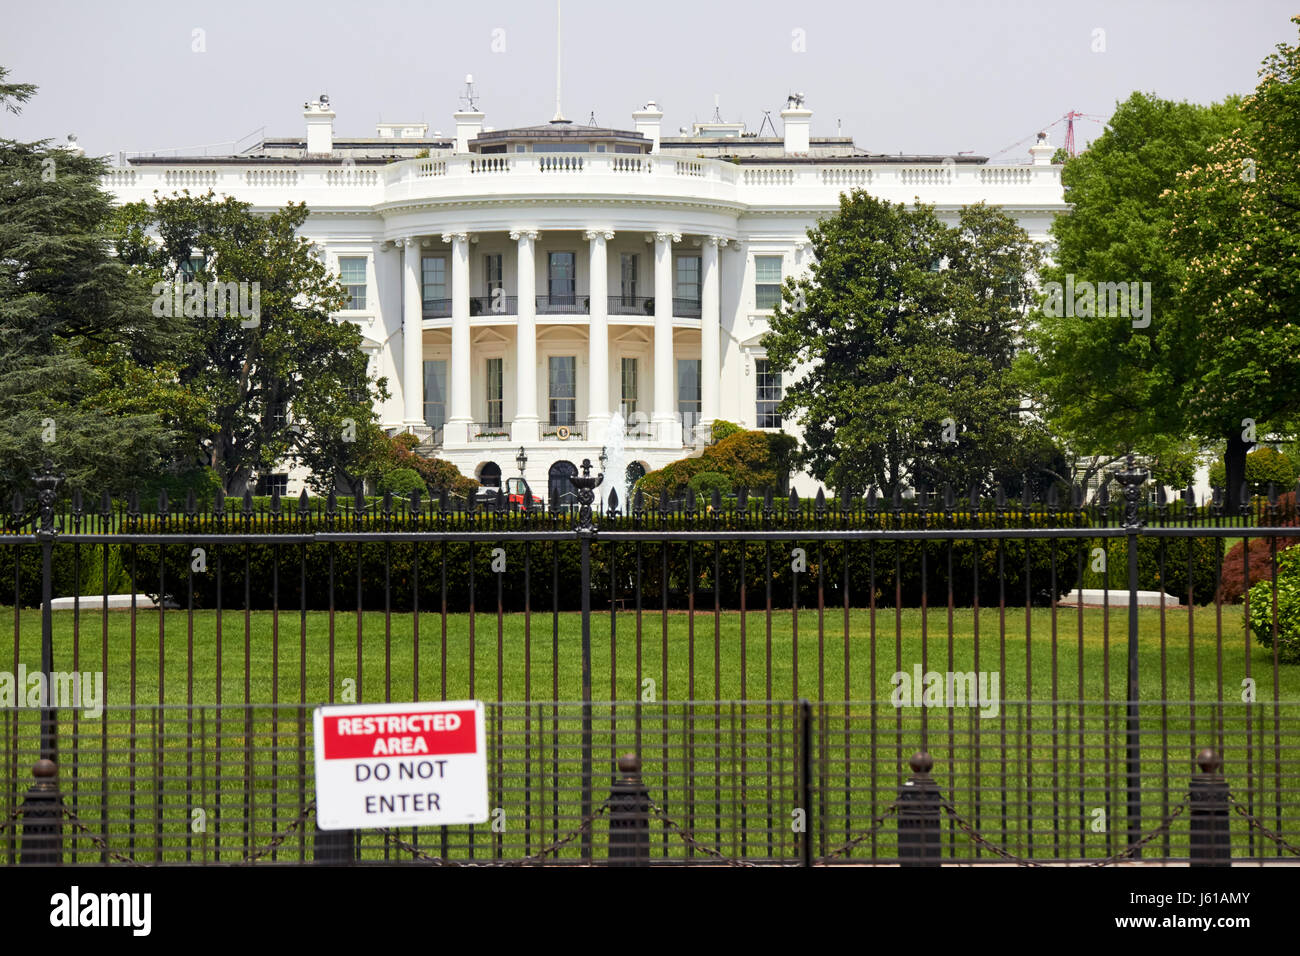 Valla de seguridad y área restringida los letreros en la fachada sur de la Casa Blanca, Washington DC, EE.UU. Foto de stock